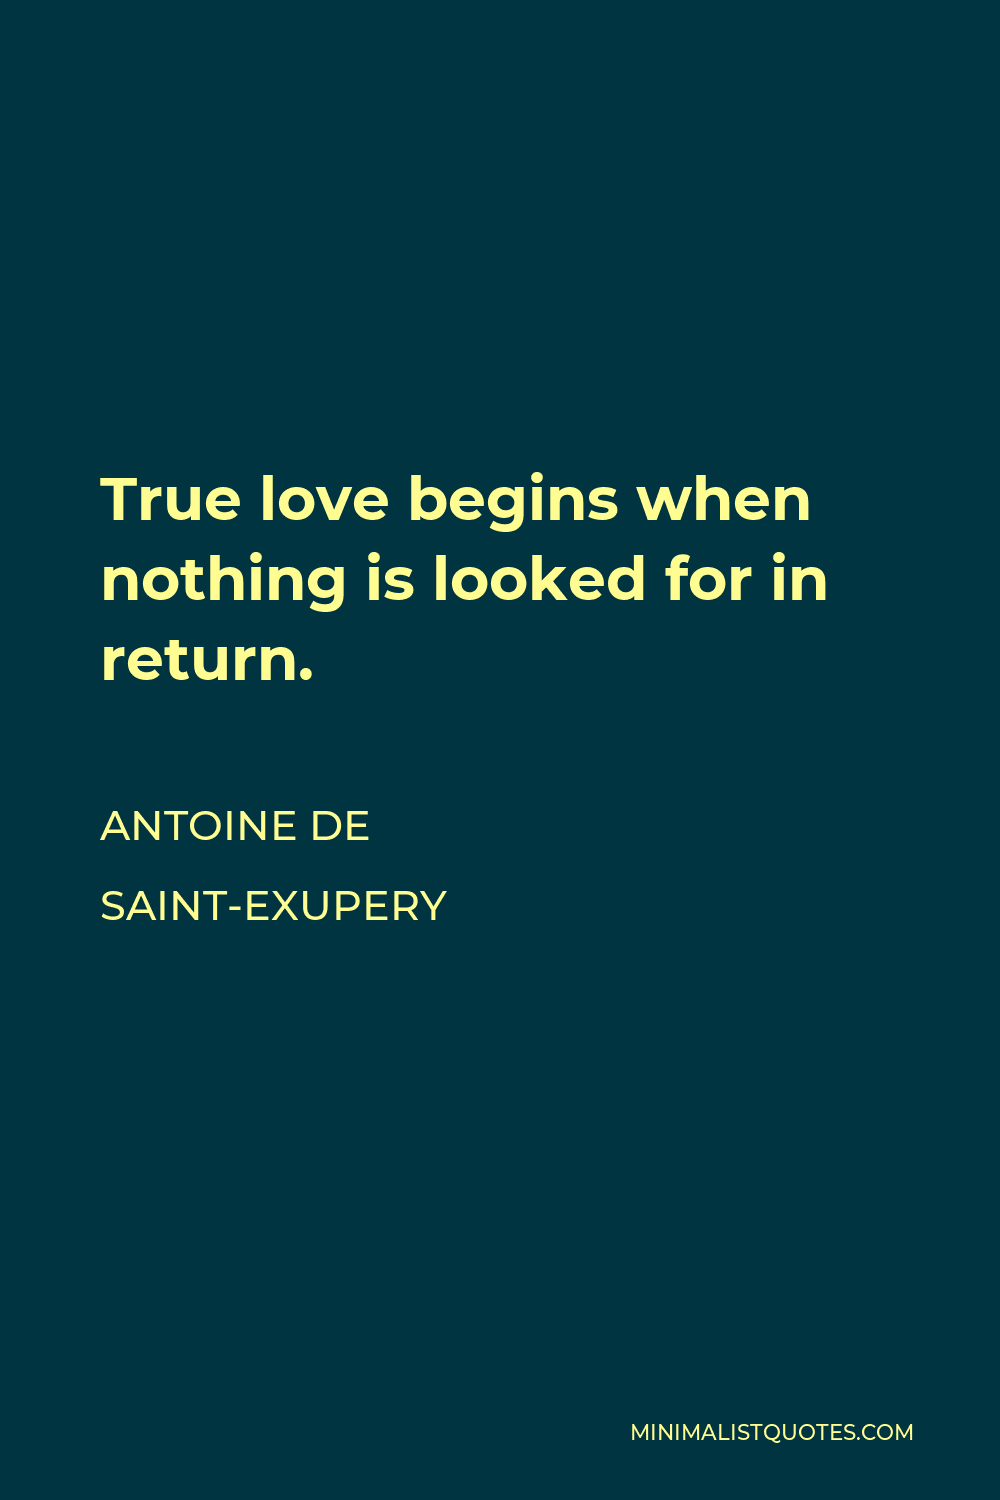 Real love begins where nothing is expected in return. - Antoine de